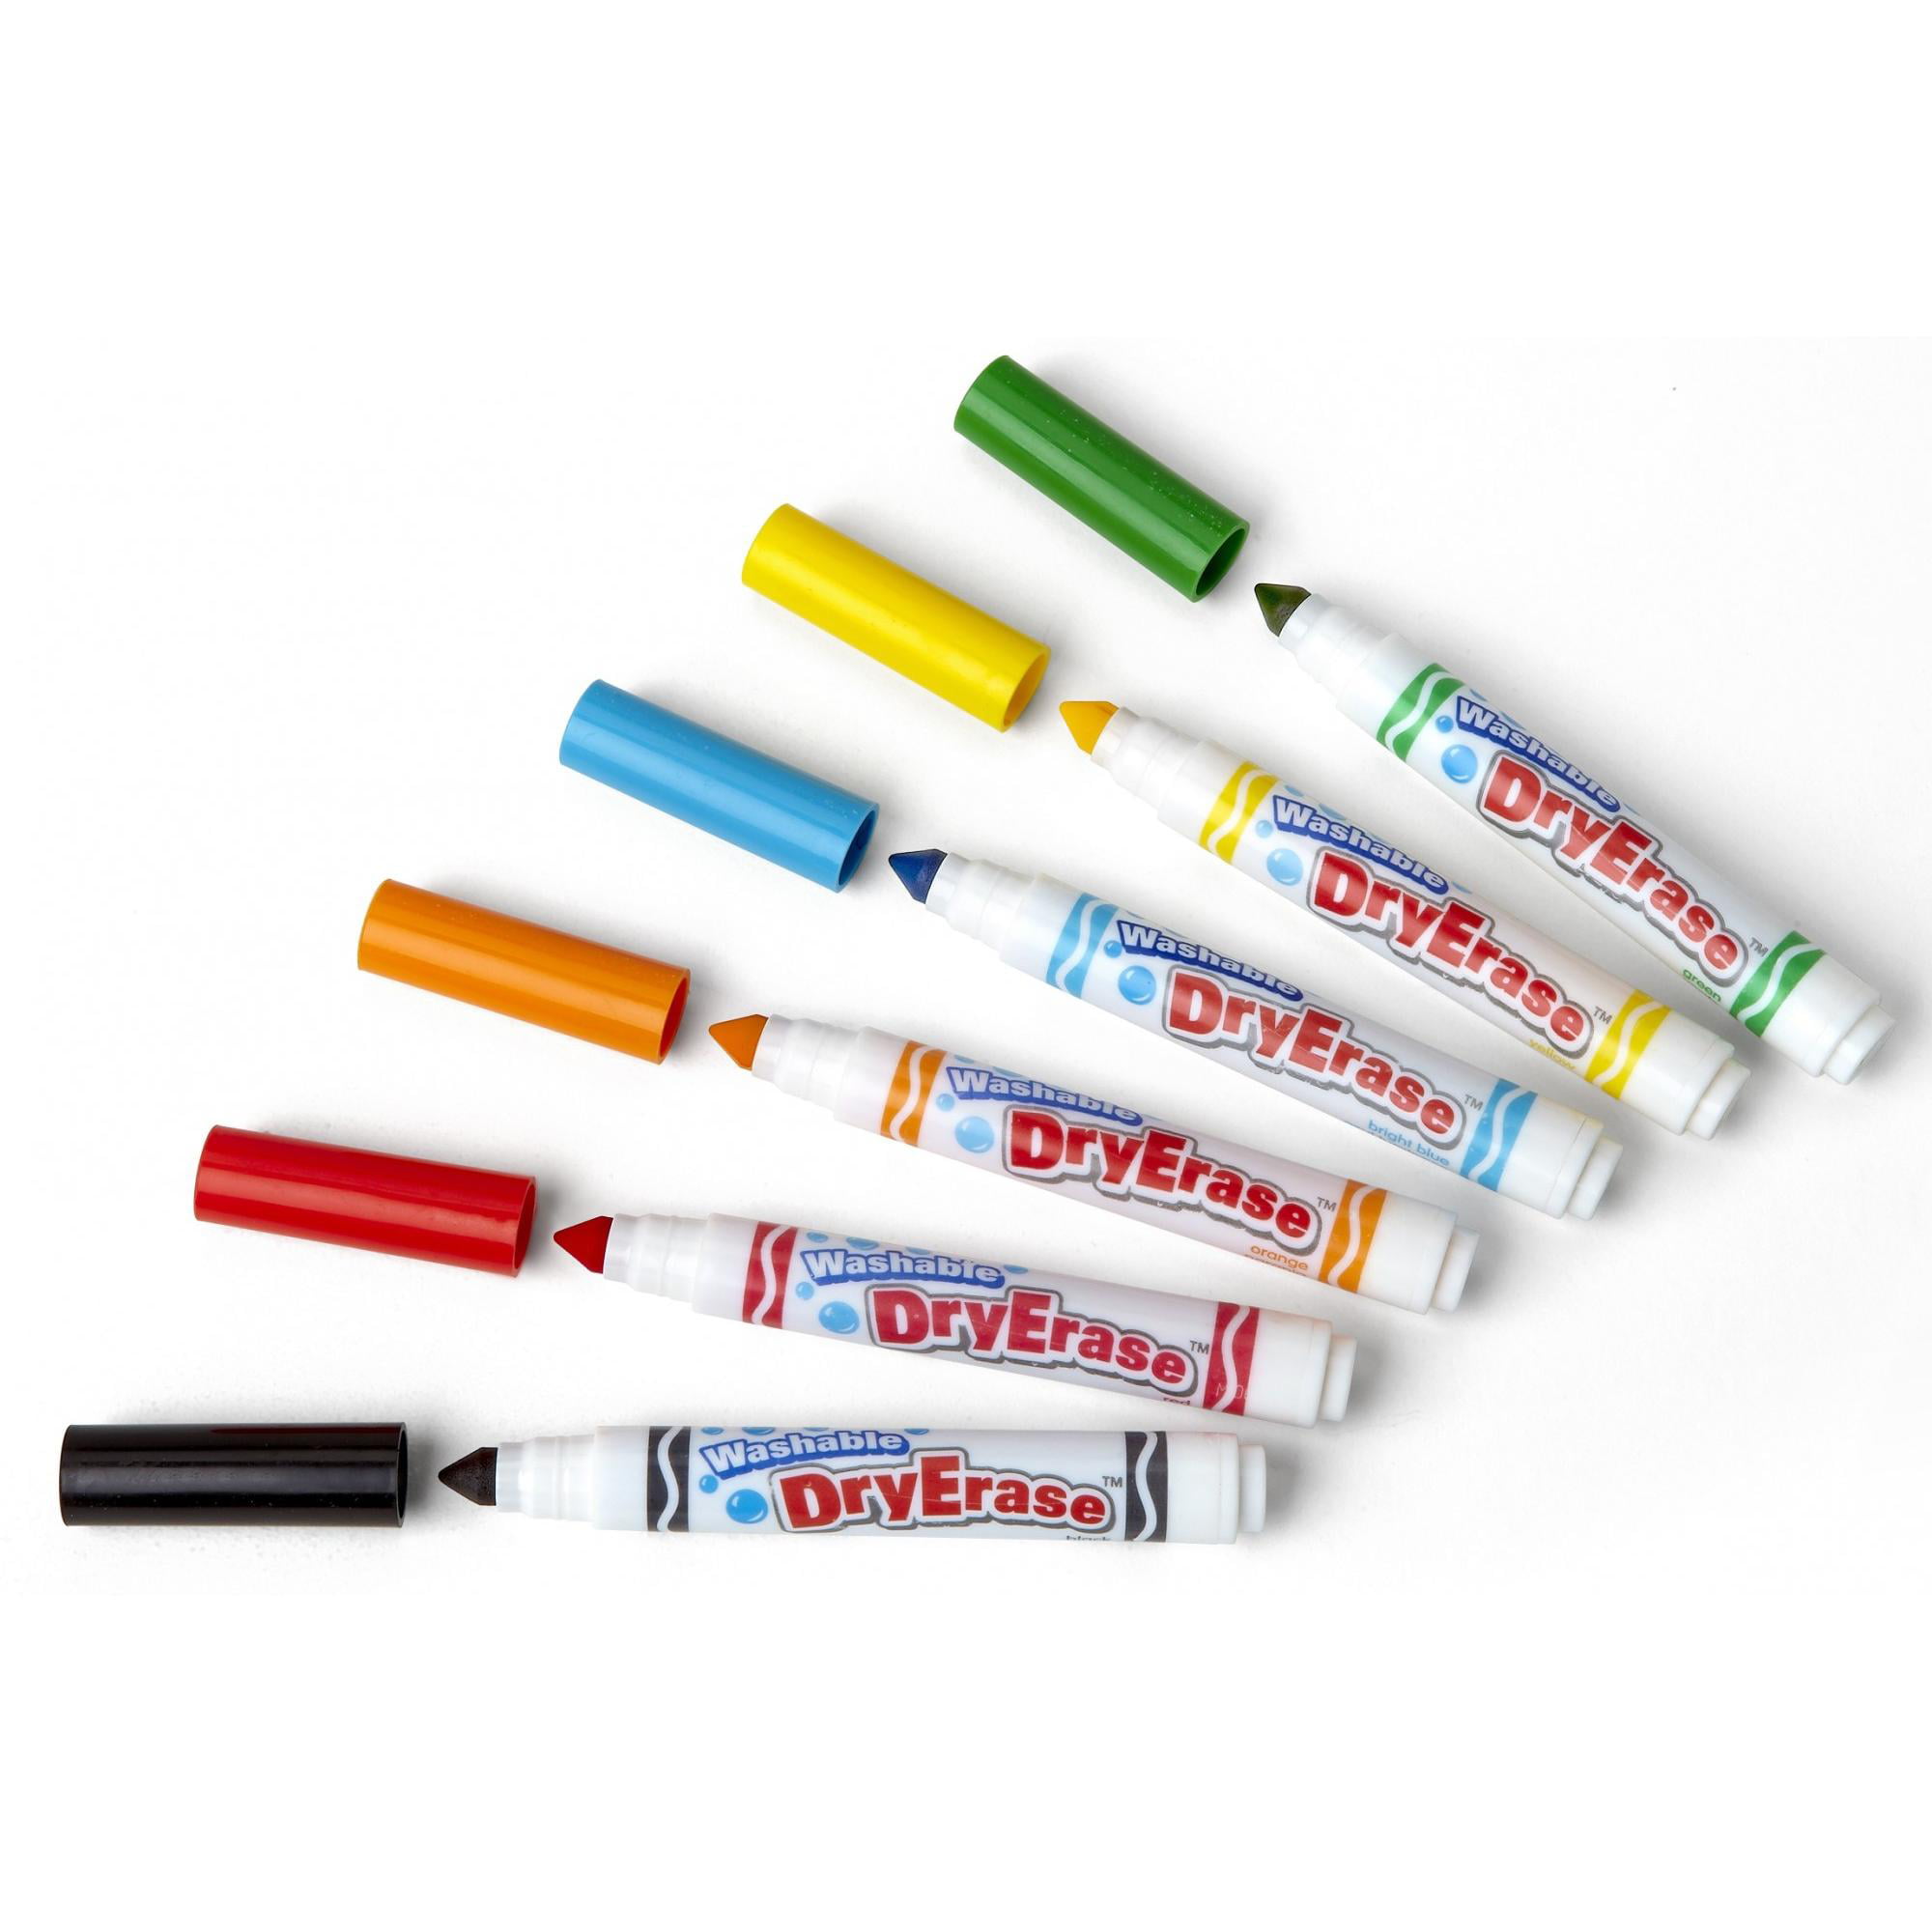 CRAYOLA Dry Erase Washable Dry Erase Markers – TopToy